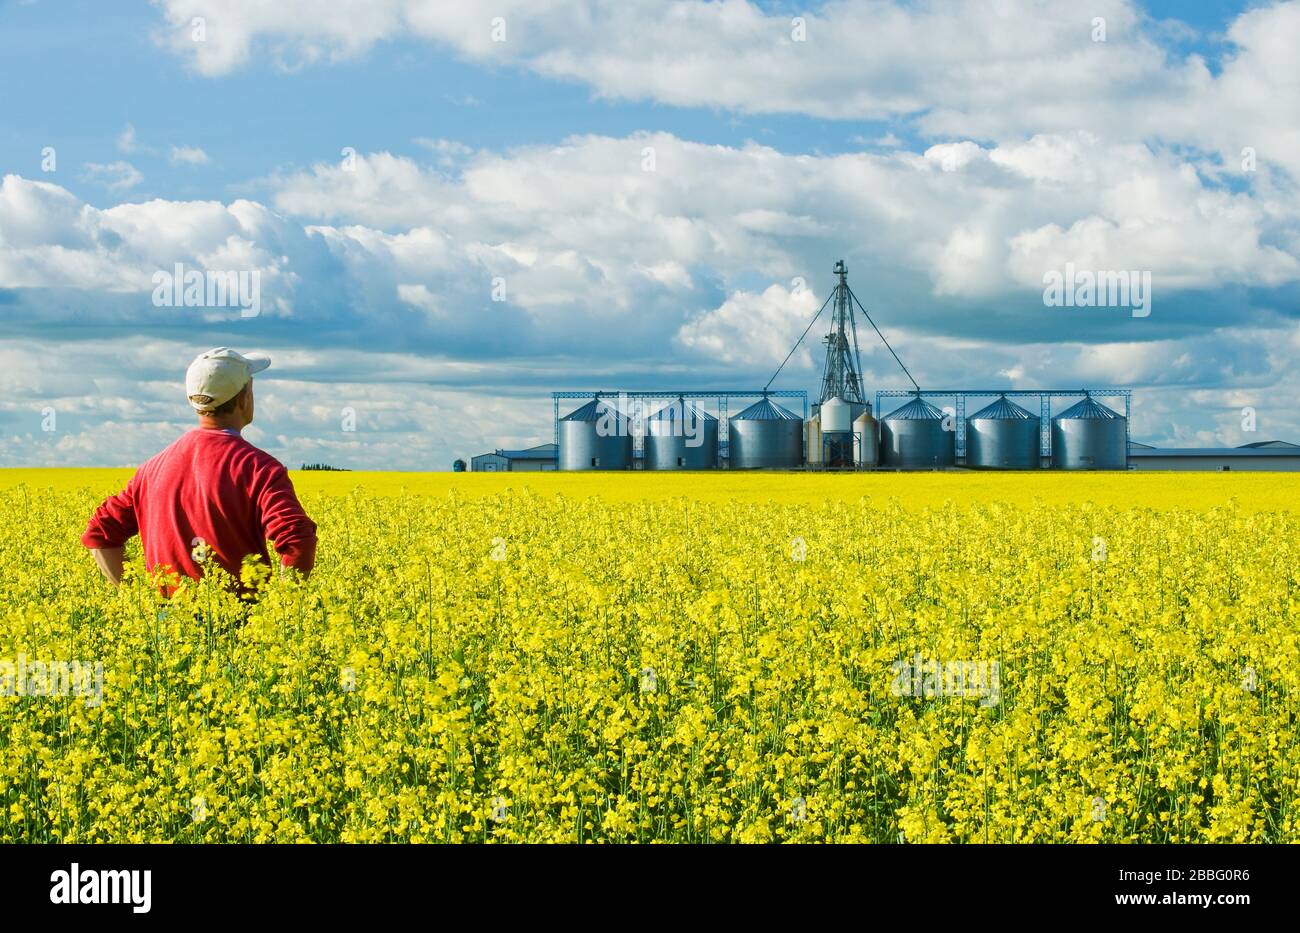 Un agricultor en un campo de canola en etapa de floración con una estructura de manejo de grano, incluyendo silos de almacenamiento, en el fondo, cerca de Somerset, Manitoba, Canadá Foto de stock